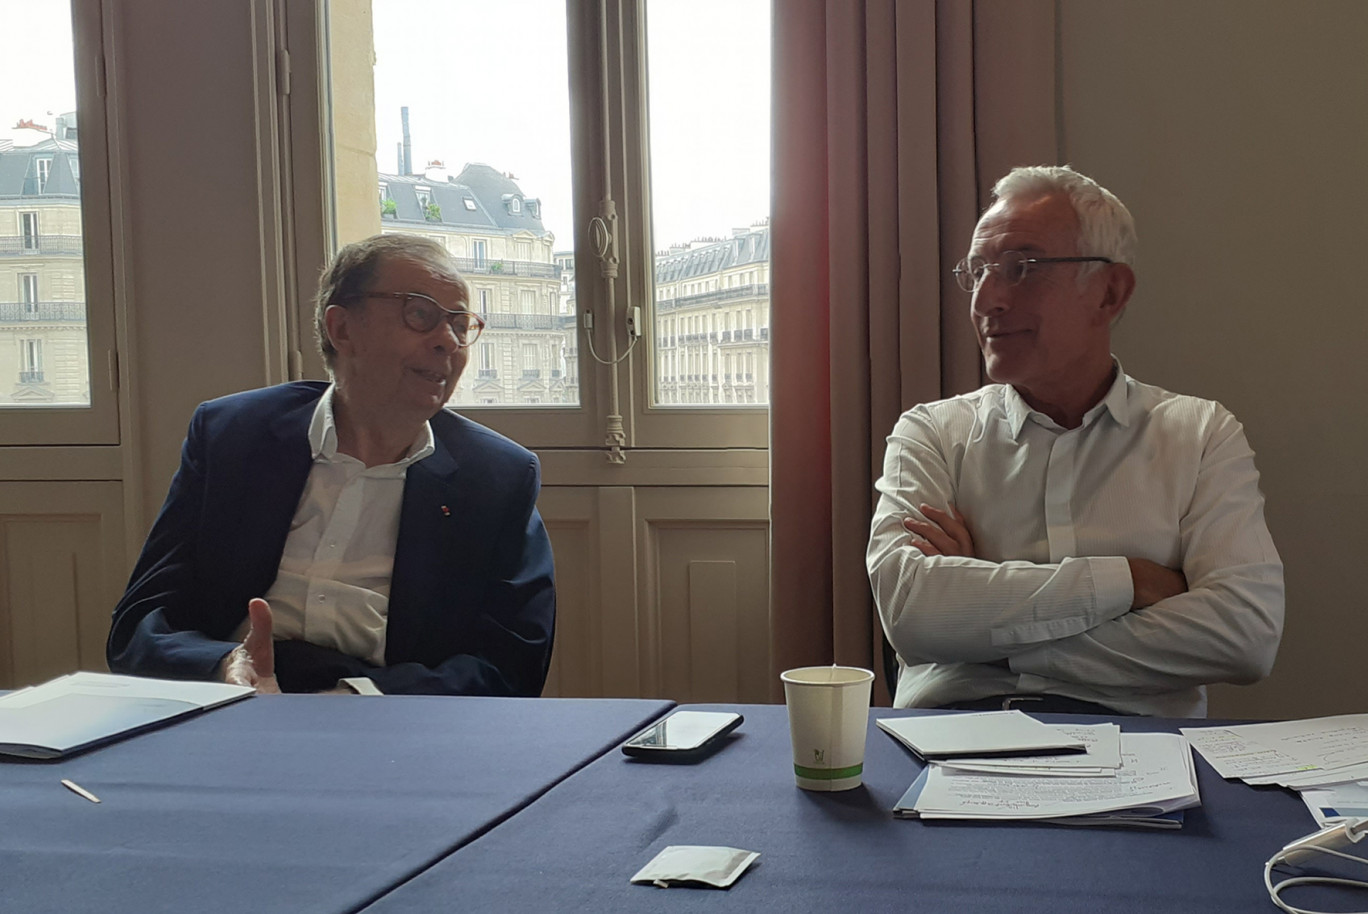 De gauche à droite, l’ancien, Louis Schweitzer, et le nouveau président, Guillaume Pepy, d’Initiative France. Crédit photo : Anne Daubrée.